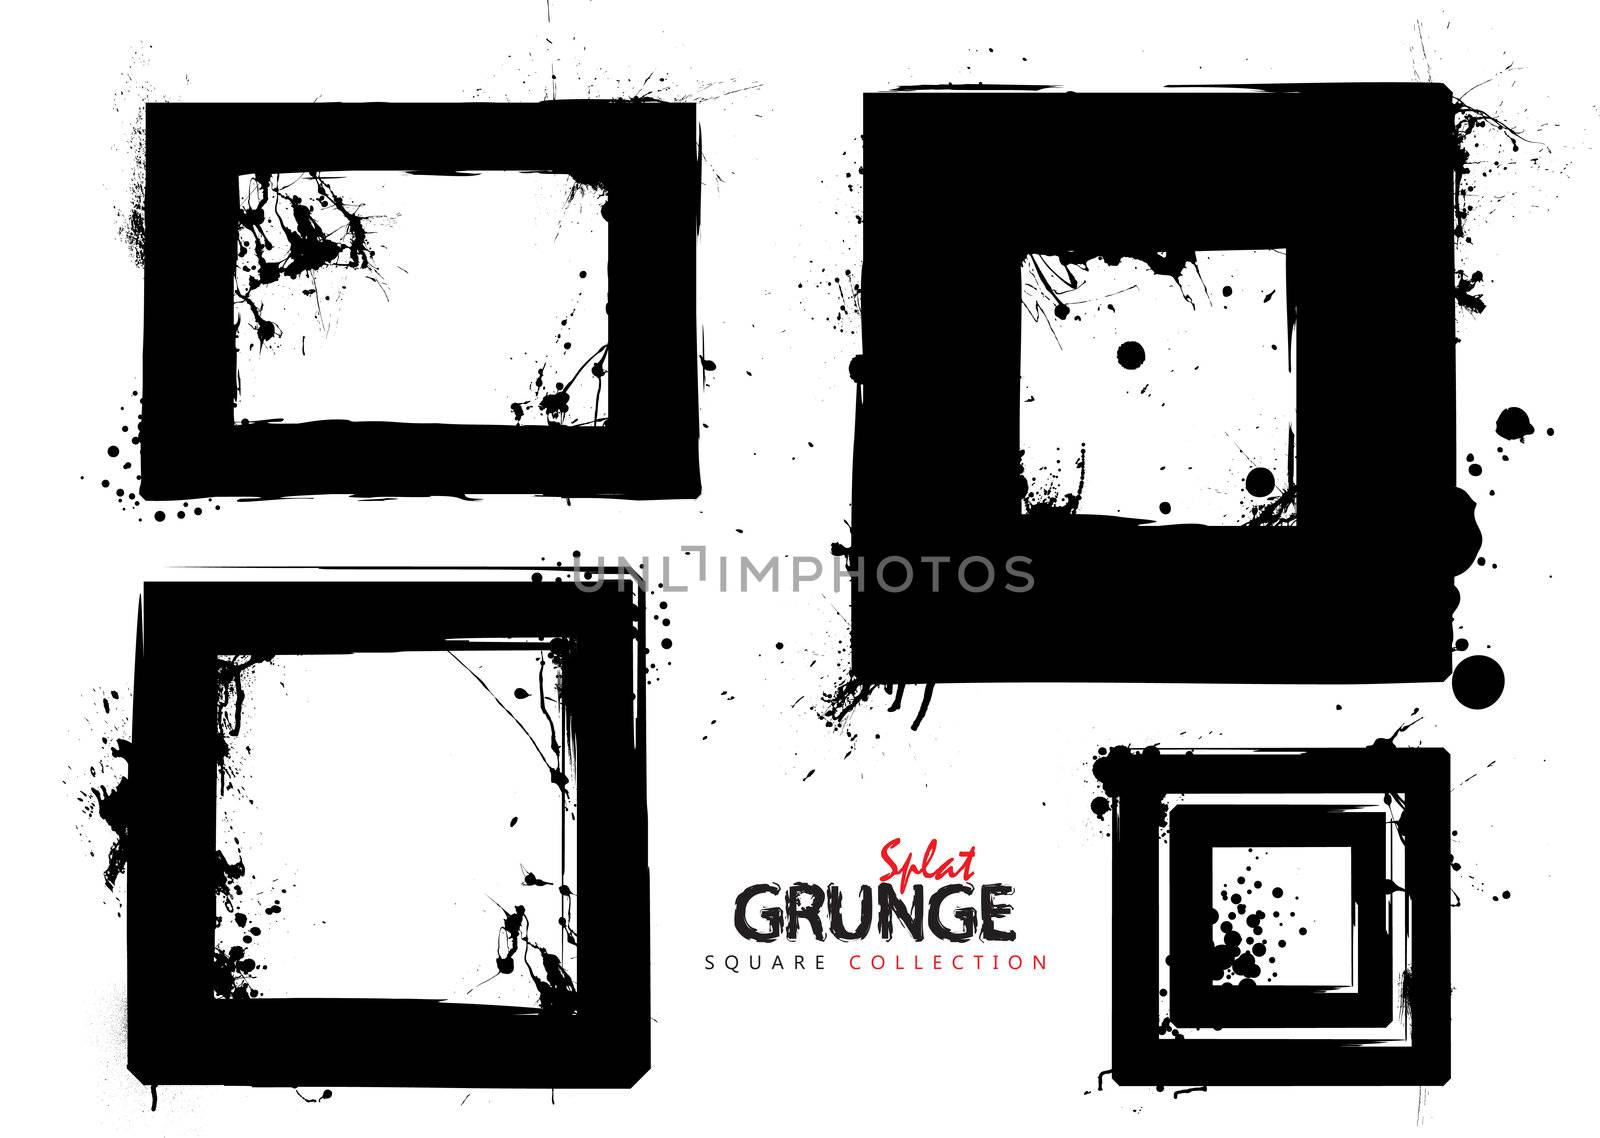 Four black square grunge ink splat frames or borders